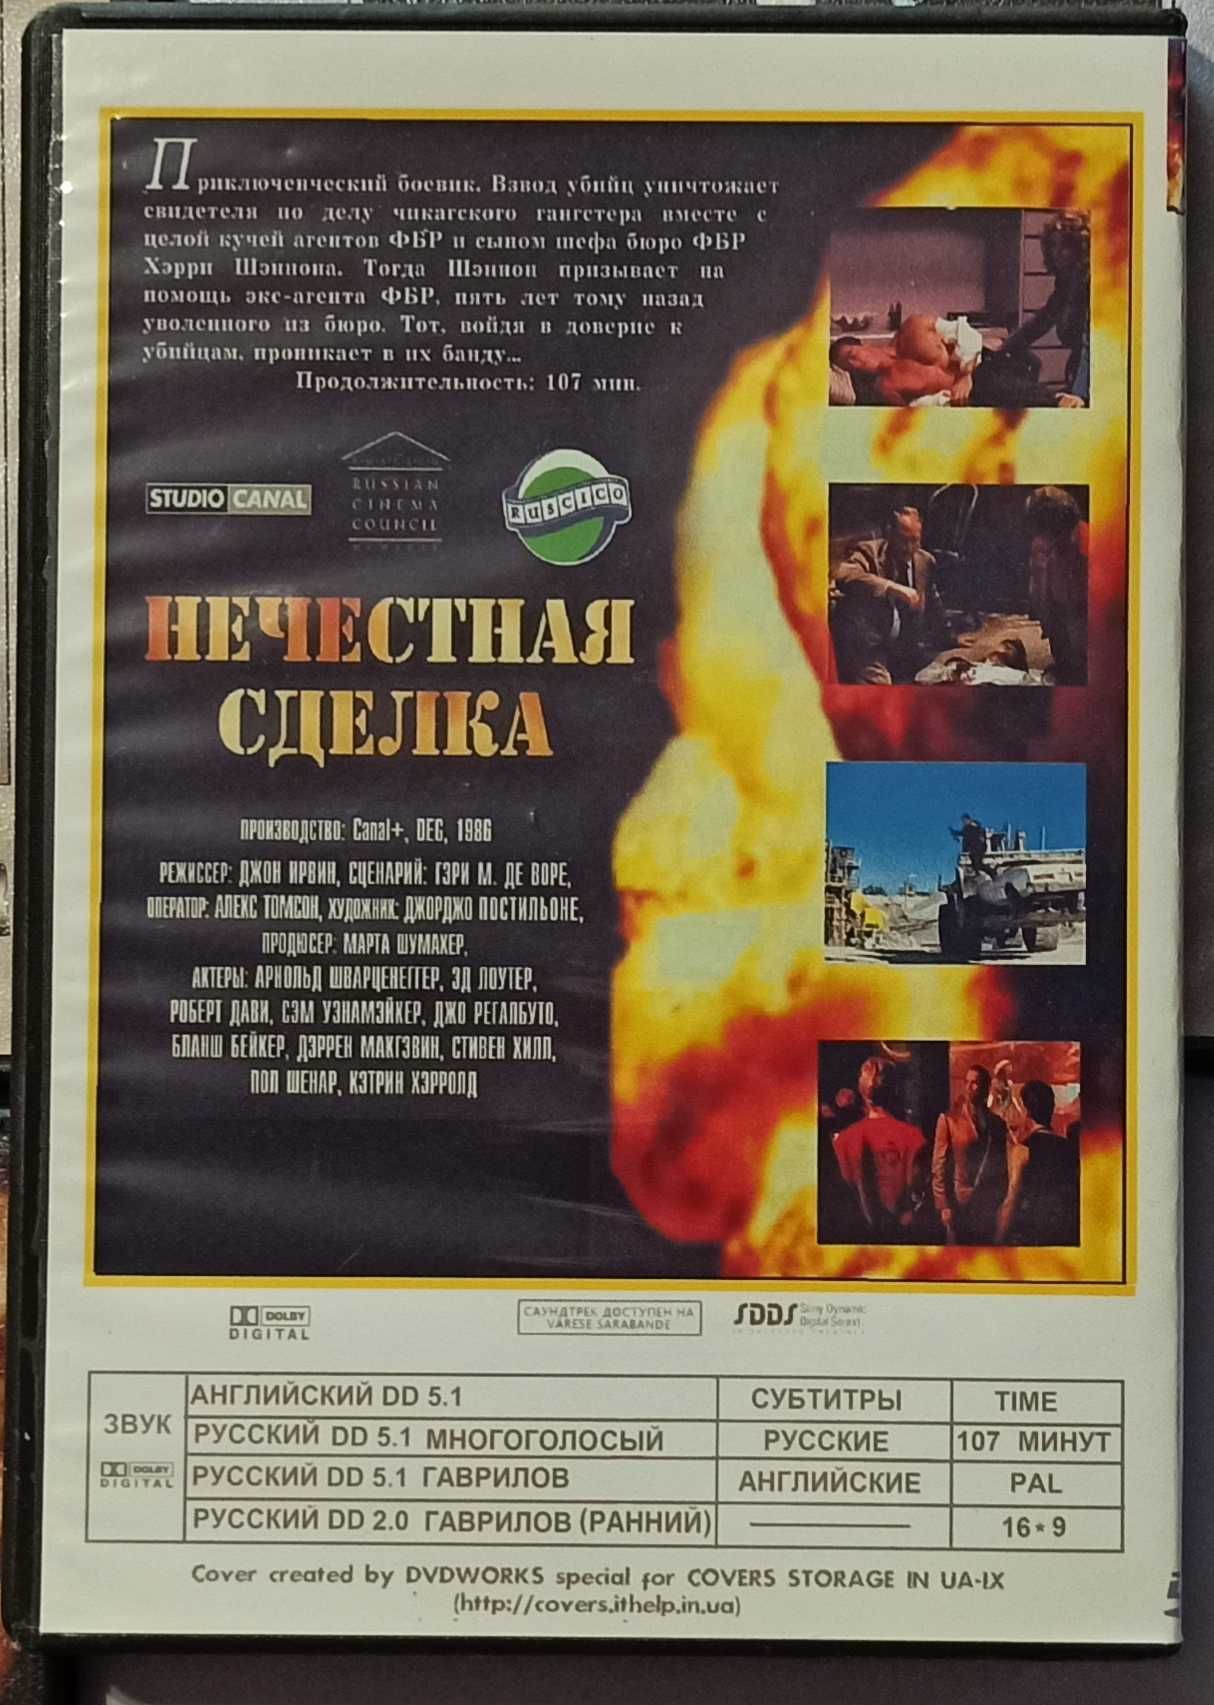 Фильмы со Шварценеггером на DVD- Терминатор, Красная жара и др.